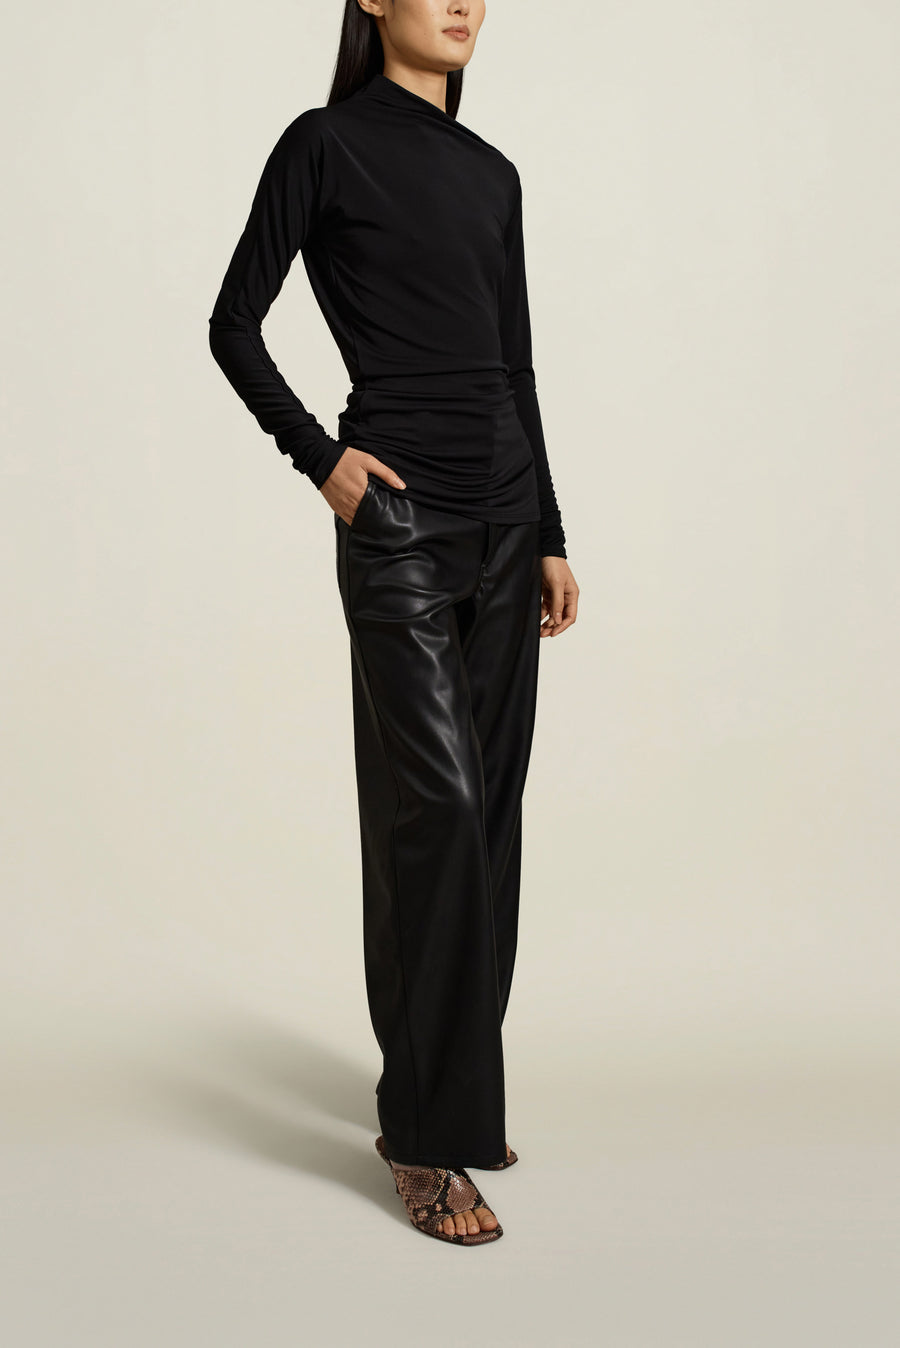 Luna Long Sleeve Top in Black Slinky Jersey